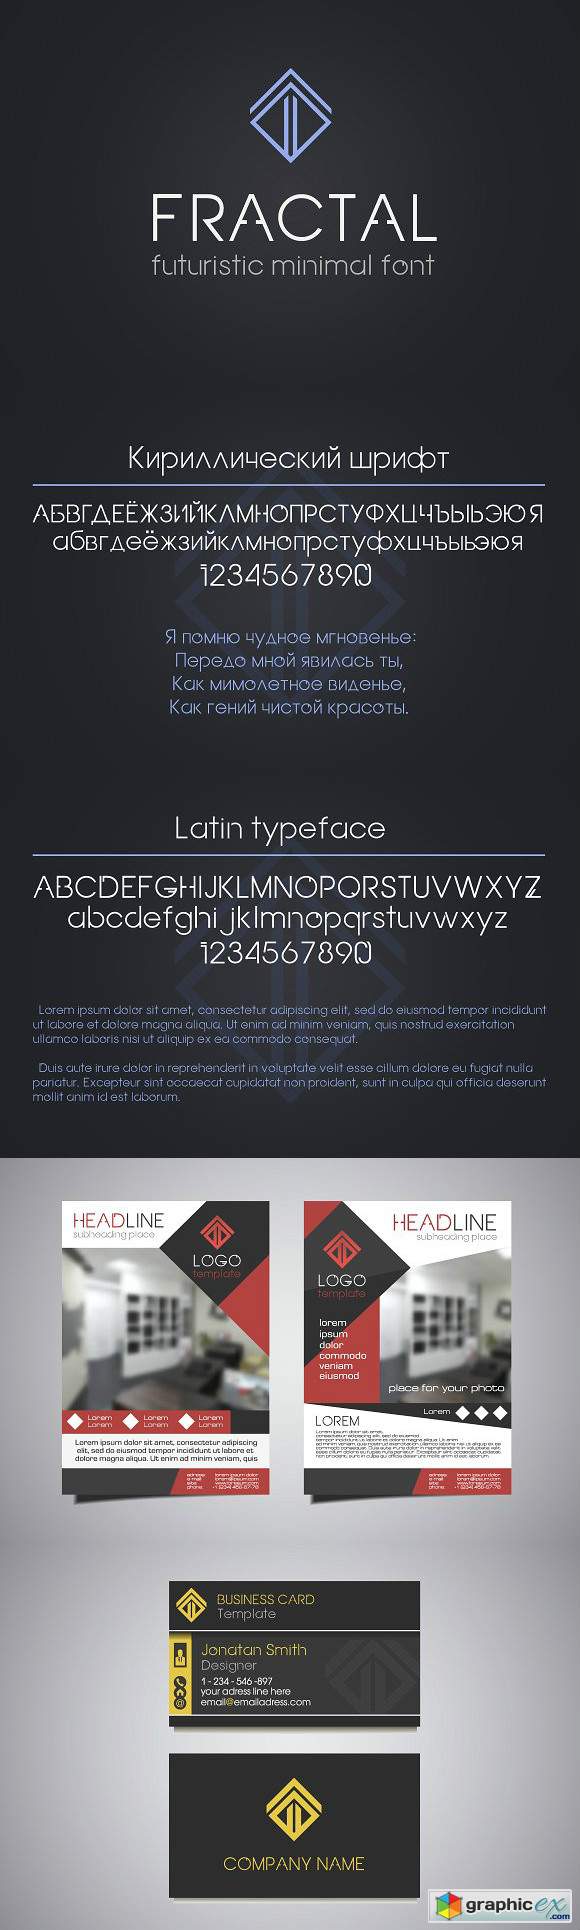 Fractal - futuristic minimal font